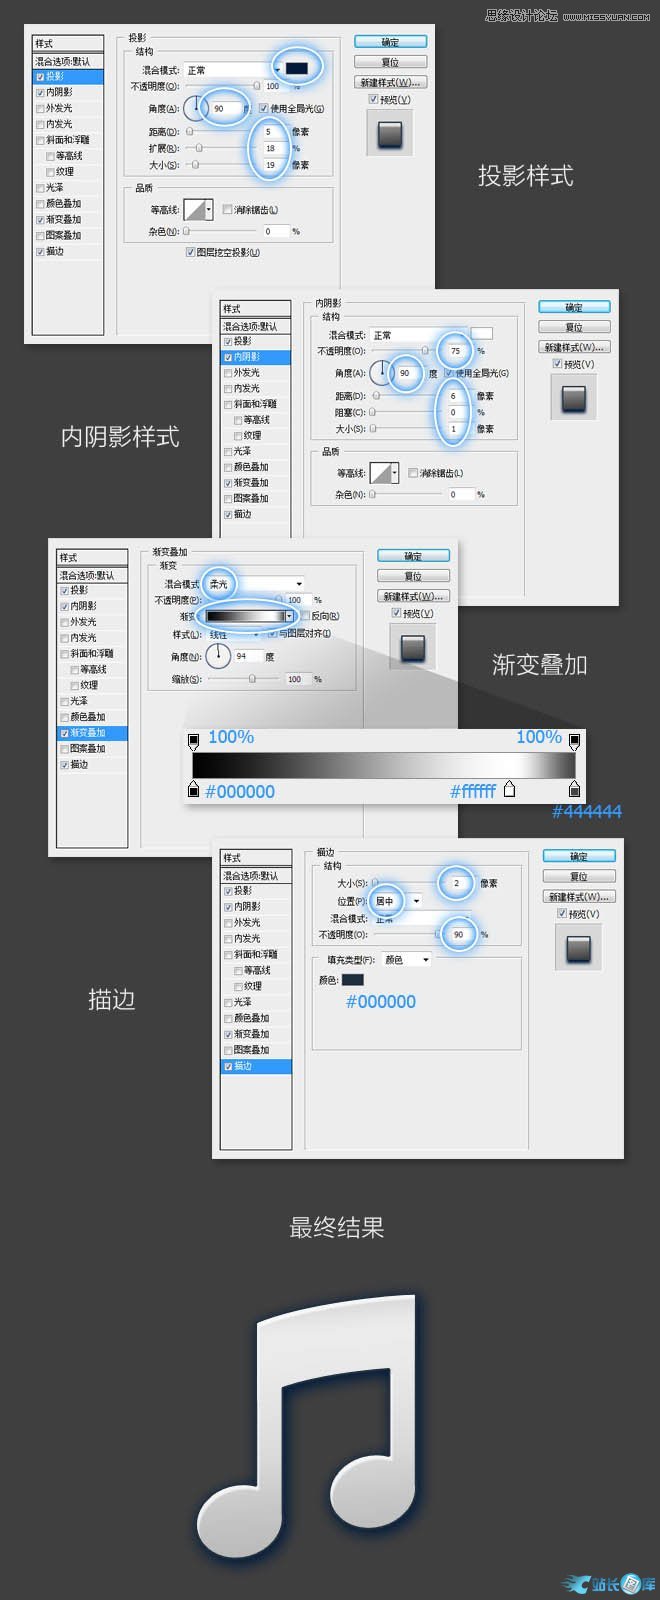 Photoshop绘制蓝色立体效果的软件图标,PS教程,站长图库